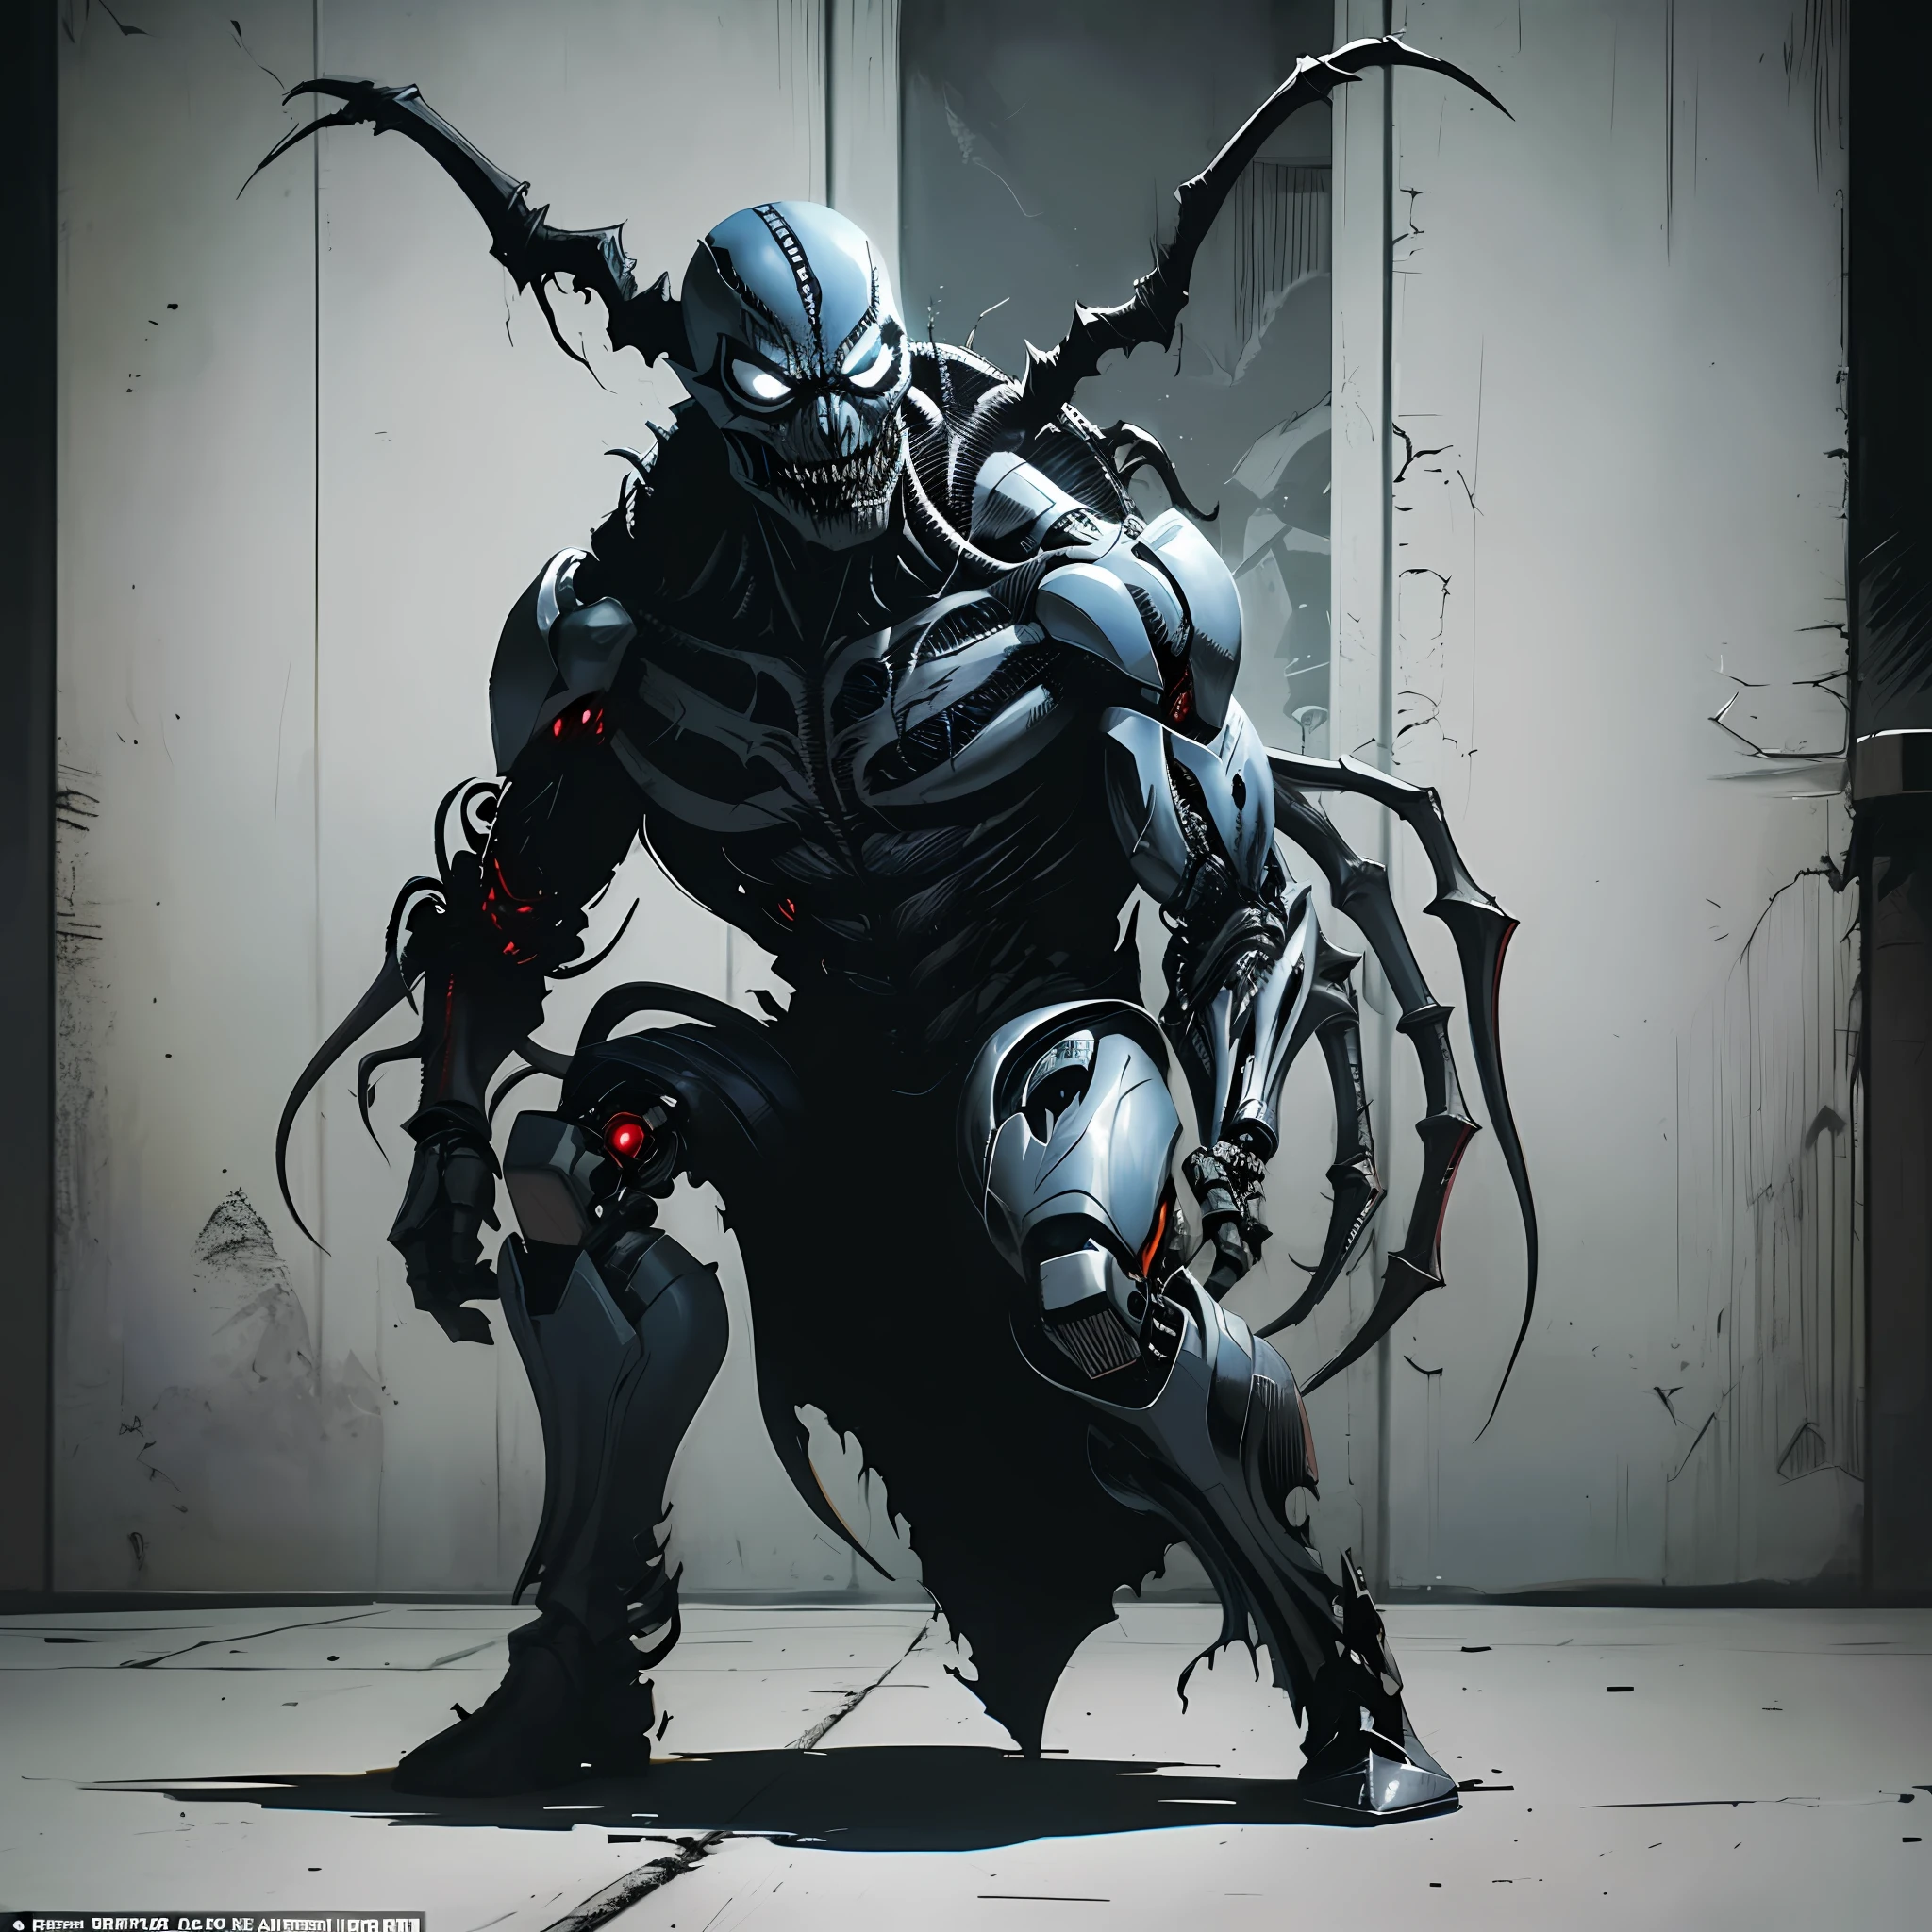 Finster aussehender Cyborg-Dämonenbrut, infiziert mit Venom-Symbiont, inspiriert von Todd McFarlanes Kunstwerk, fängt die dunkle und düstere Atmosphäre von Image Comics und DC Comics ein. Actiongeladene Aufnahme auf einem Schlachtfeld, Darstellung einer furchterregenden und bösartigen Präsenz. Vollständiges Rendern eines einzelnen Charakters, Meisterwerk